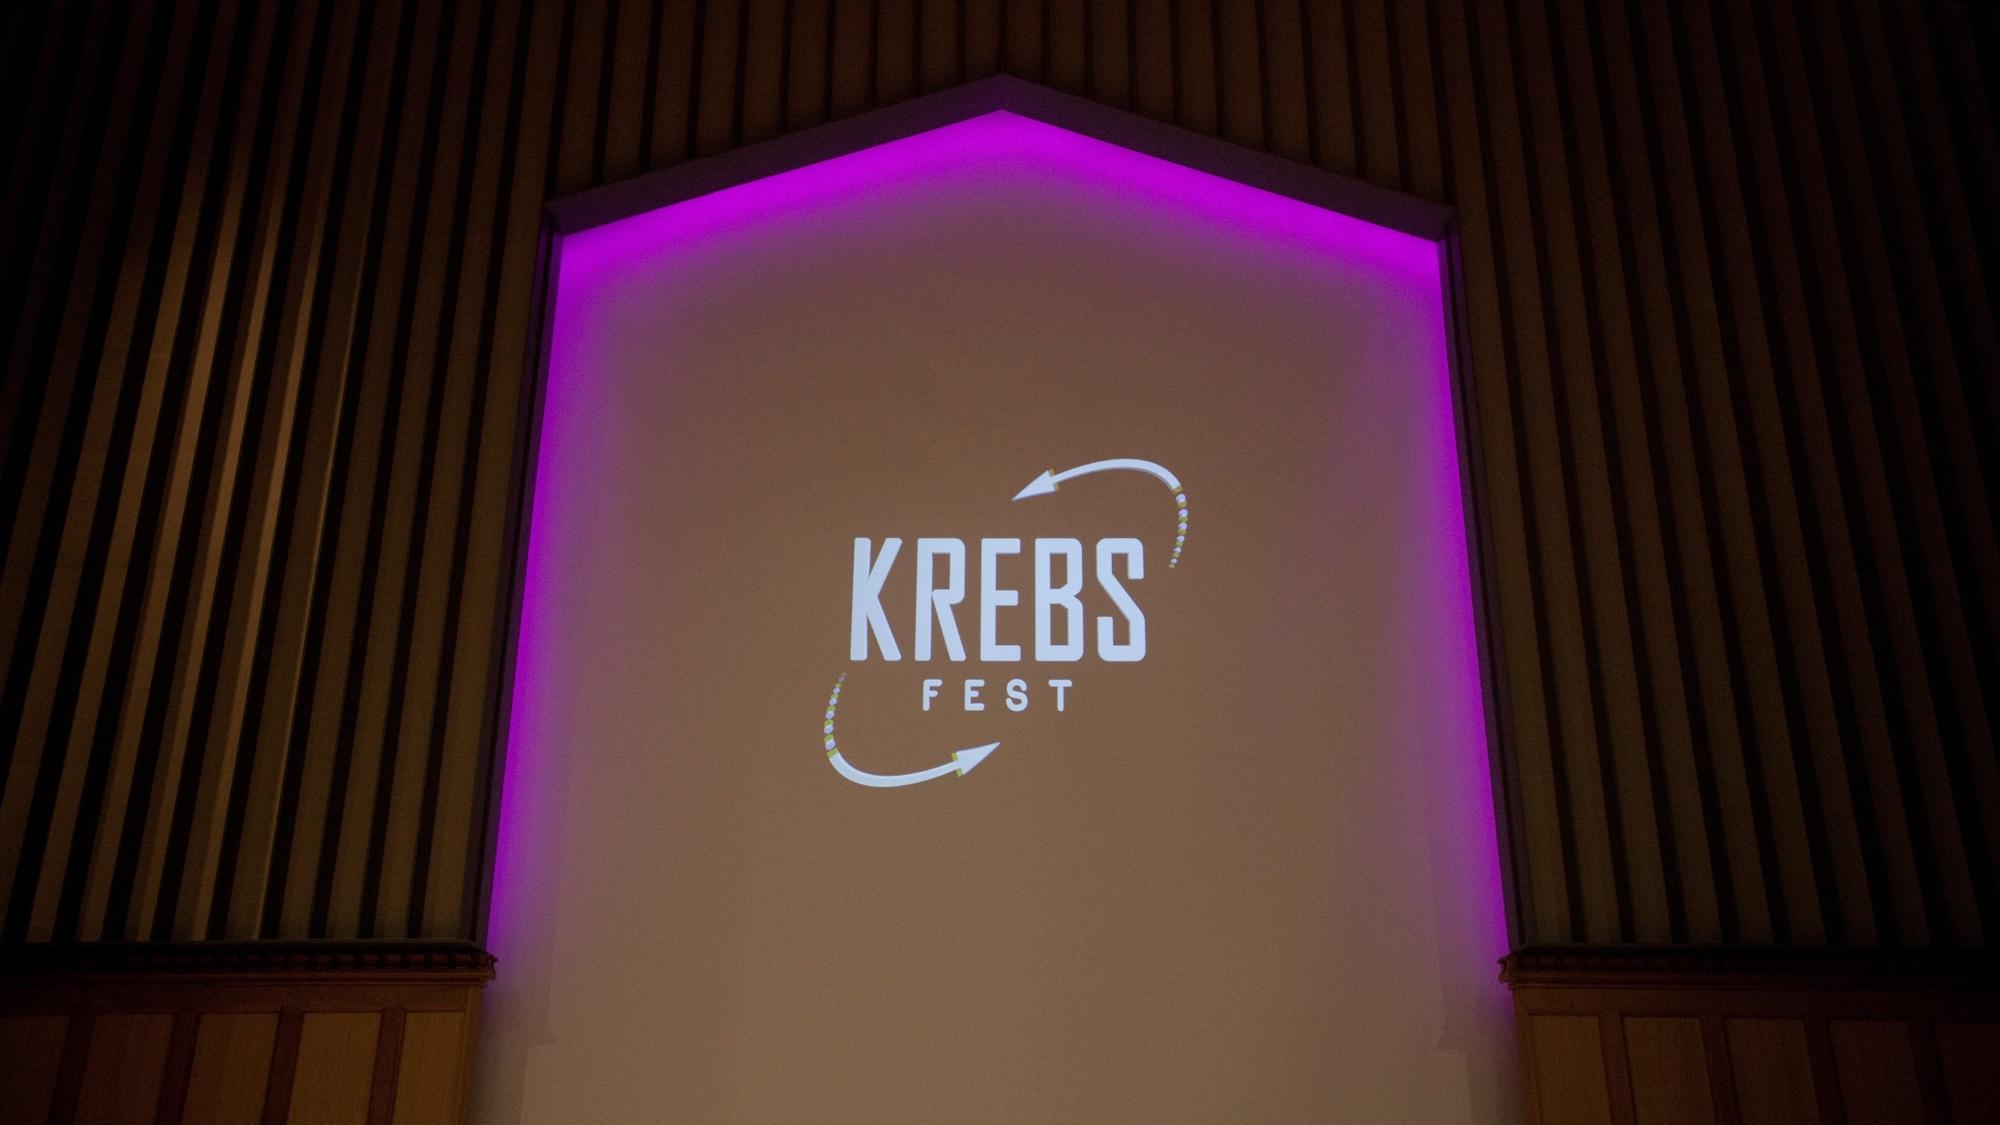 KrebsFest logo projection